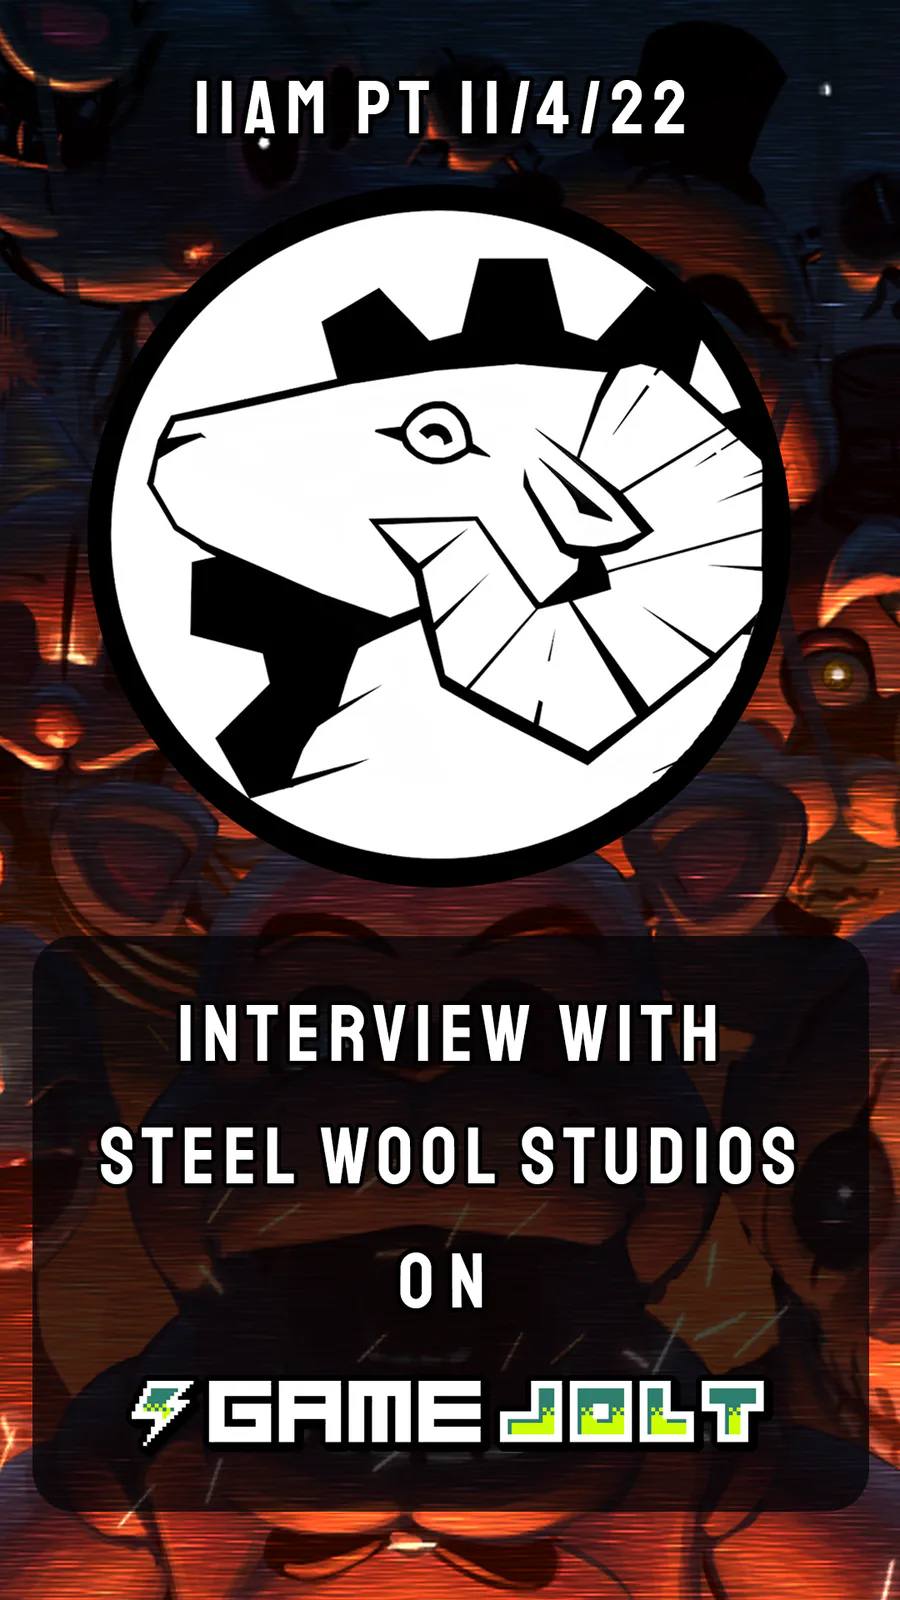 Steel Wool Studios